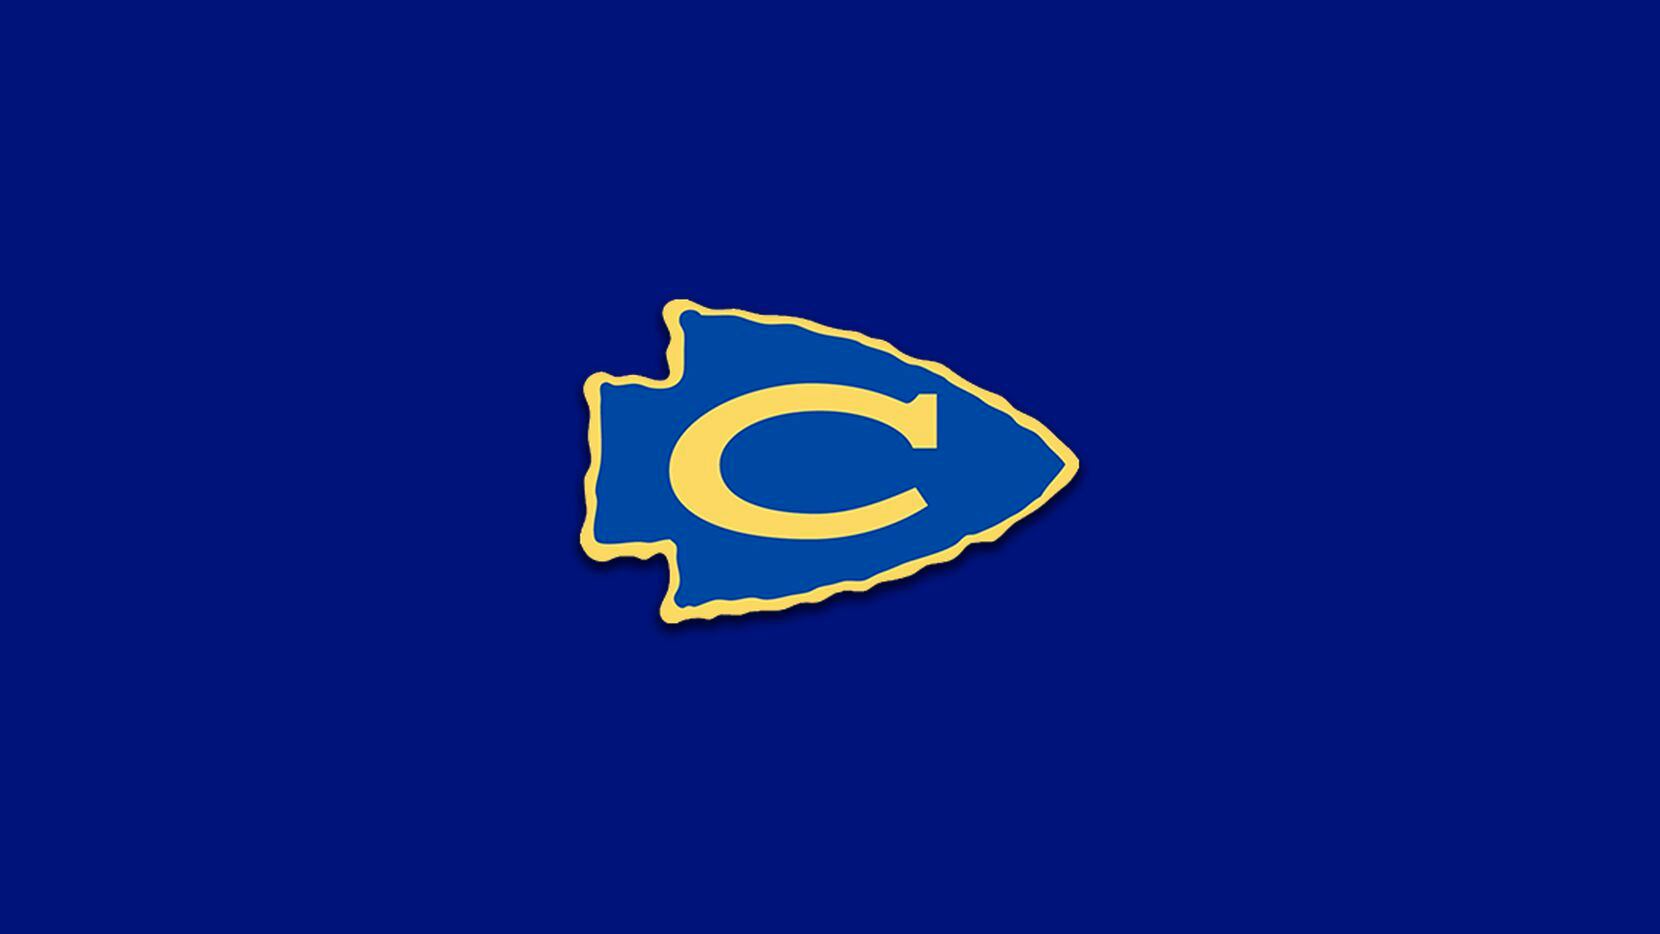 Nevada Community logo.